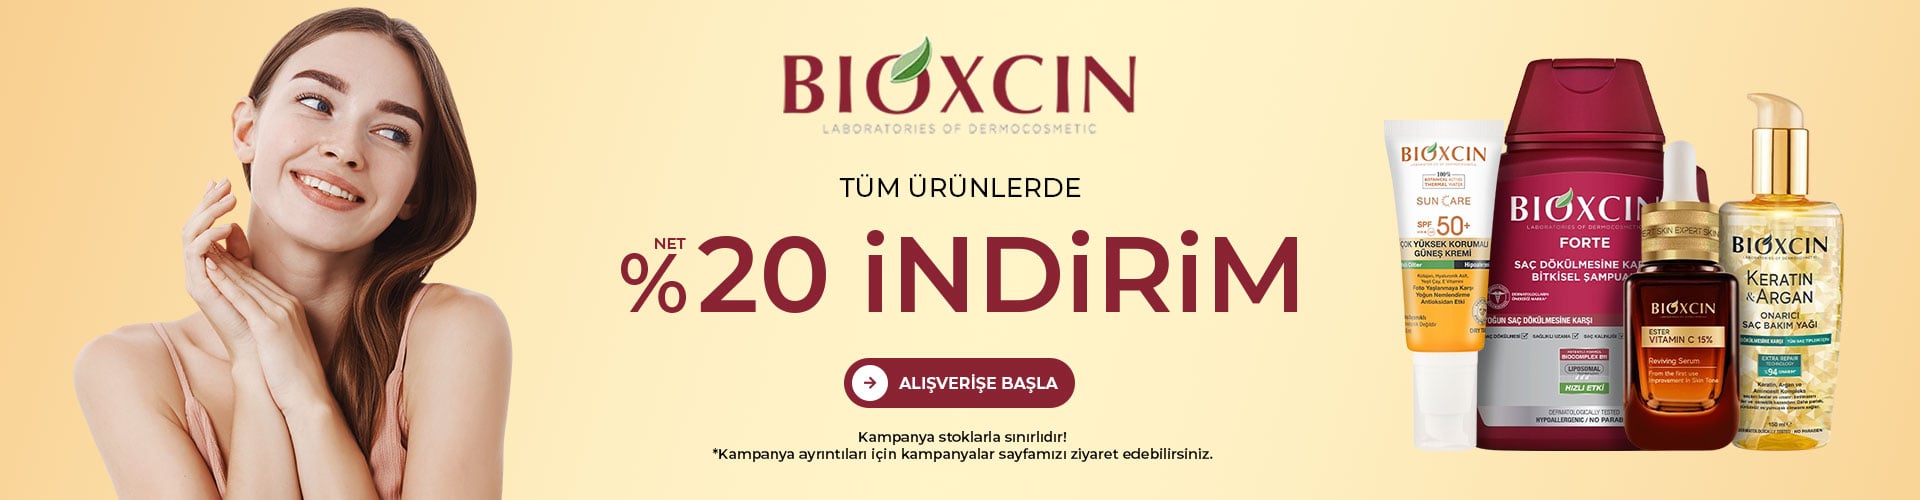 bioxcin-kampanya